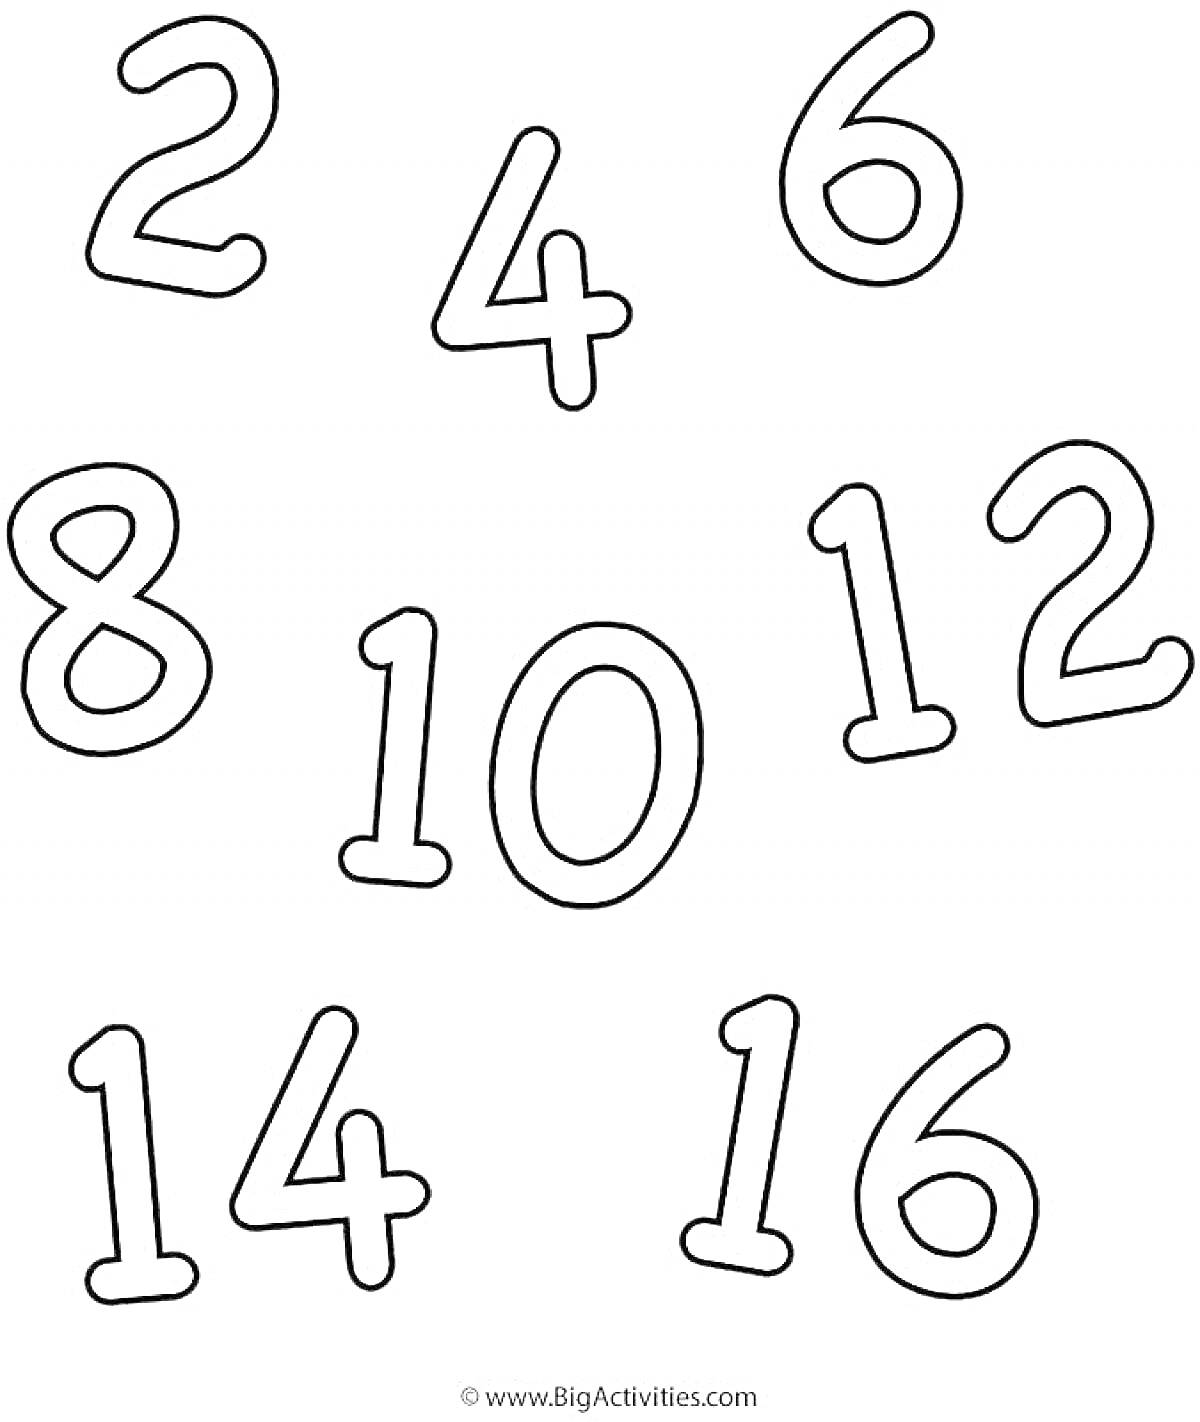 Раскраска Набор цифр для раскраски от 2 до 16 (2, 4, 6, 8, 10, 12, 14, 16)